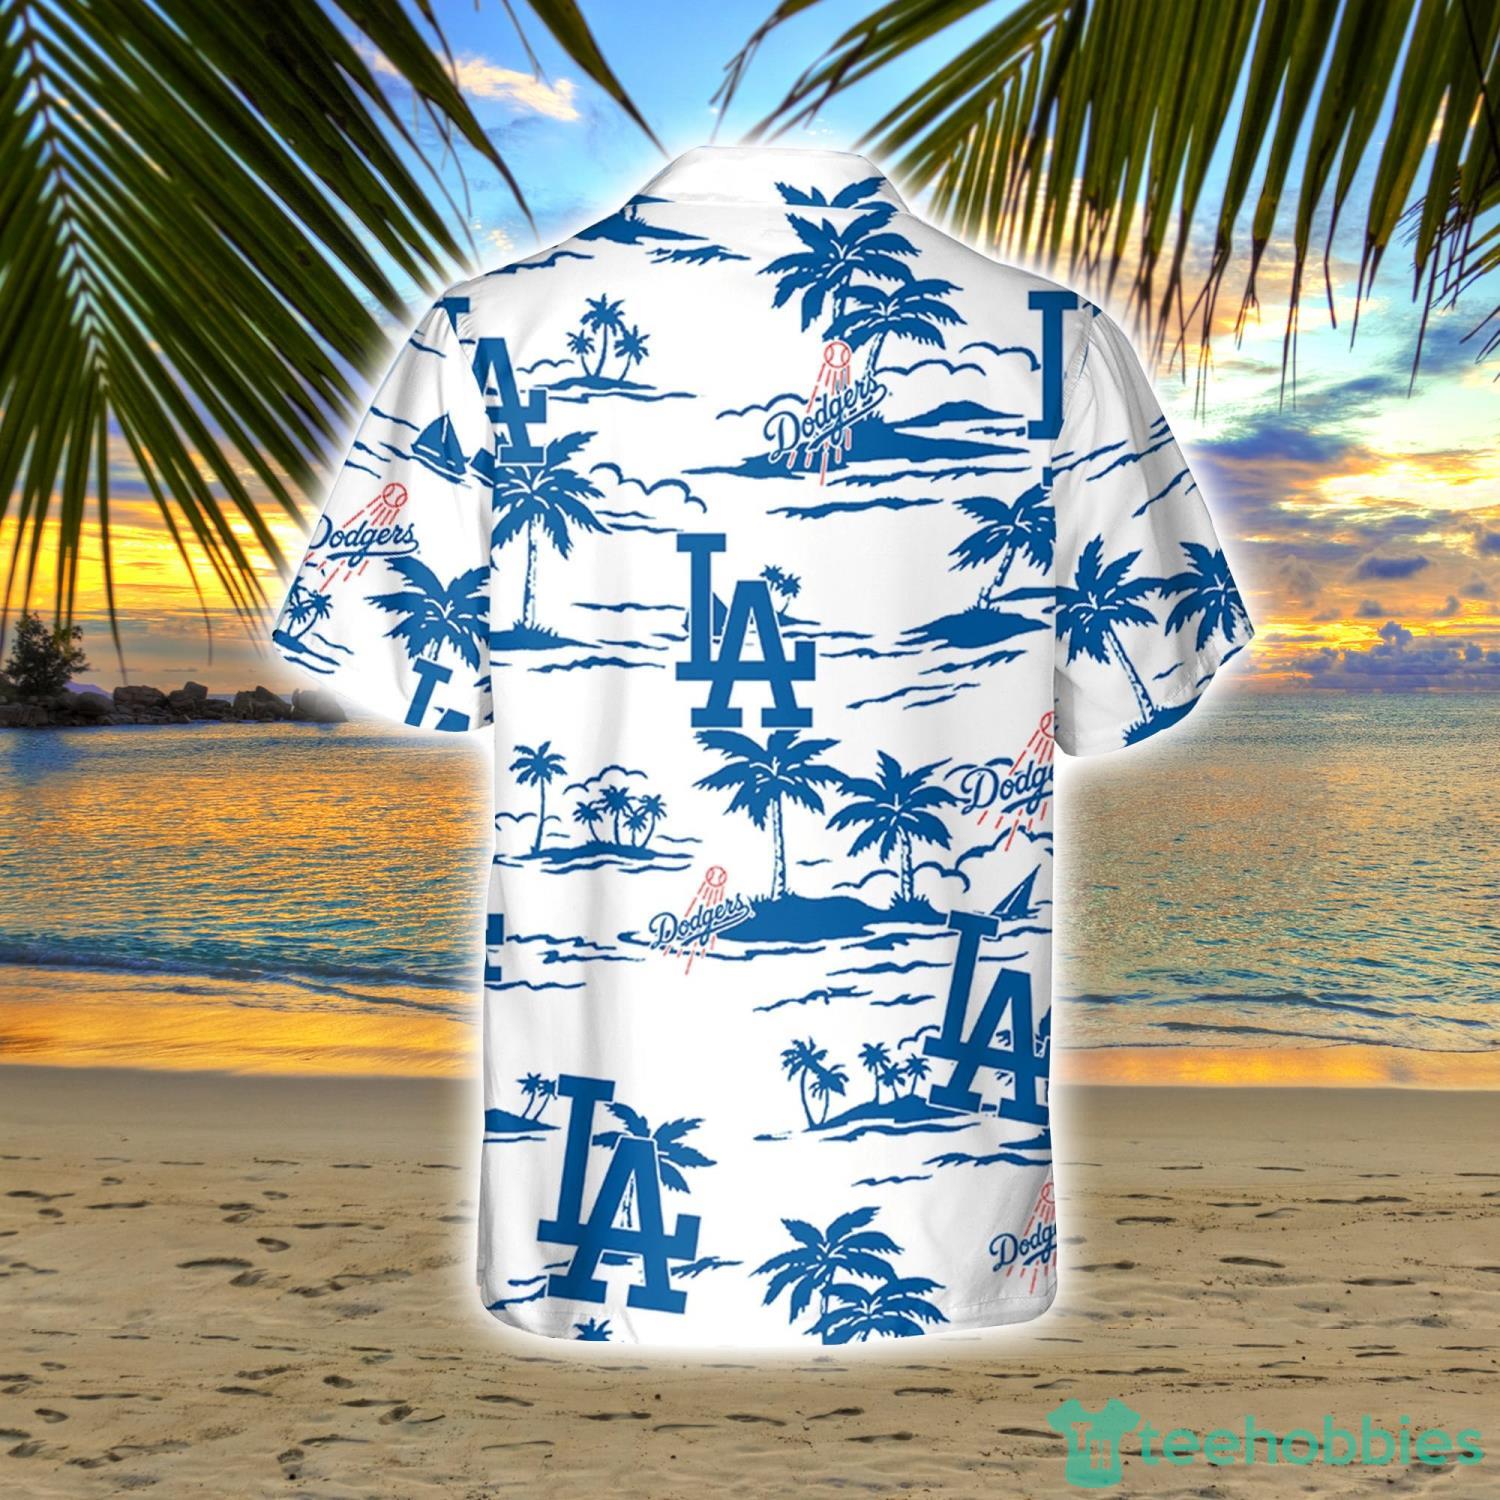 MLB Los Angeles Dodgers Hawaiian Shirt Coconut Tree Pattern Aloha Beach